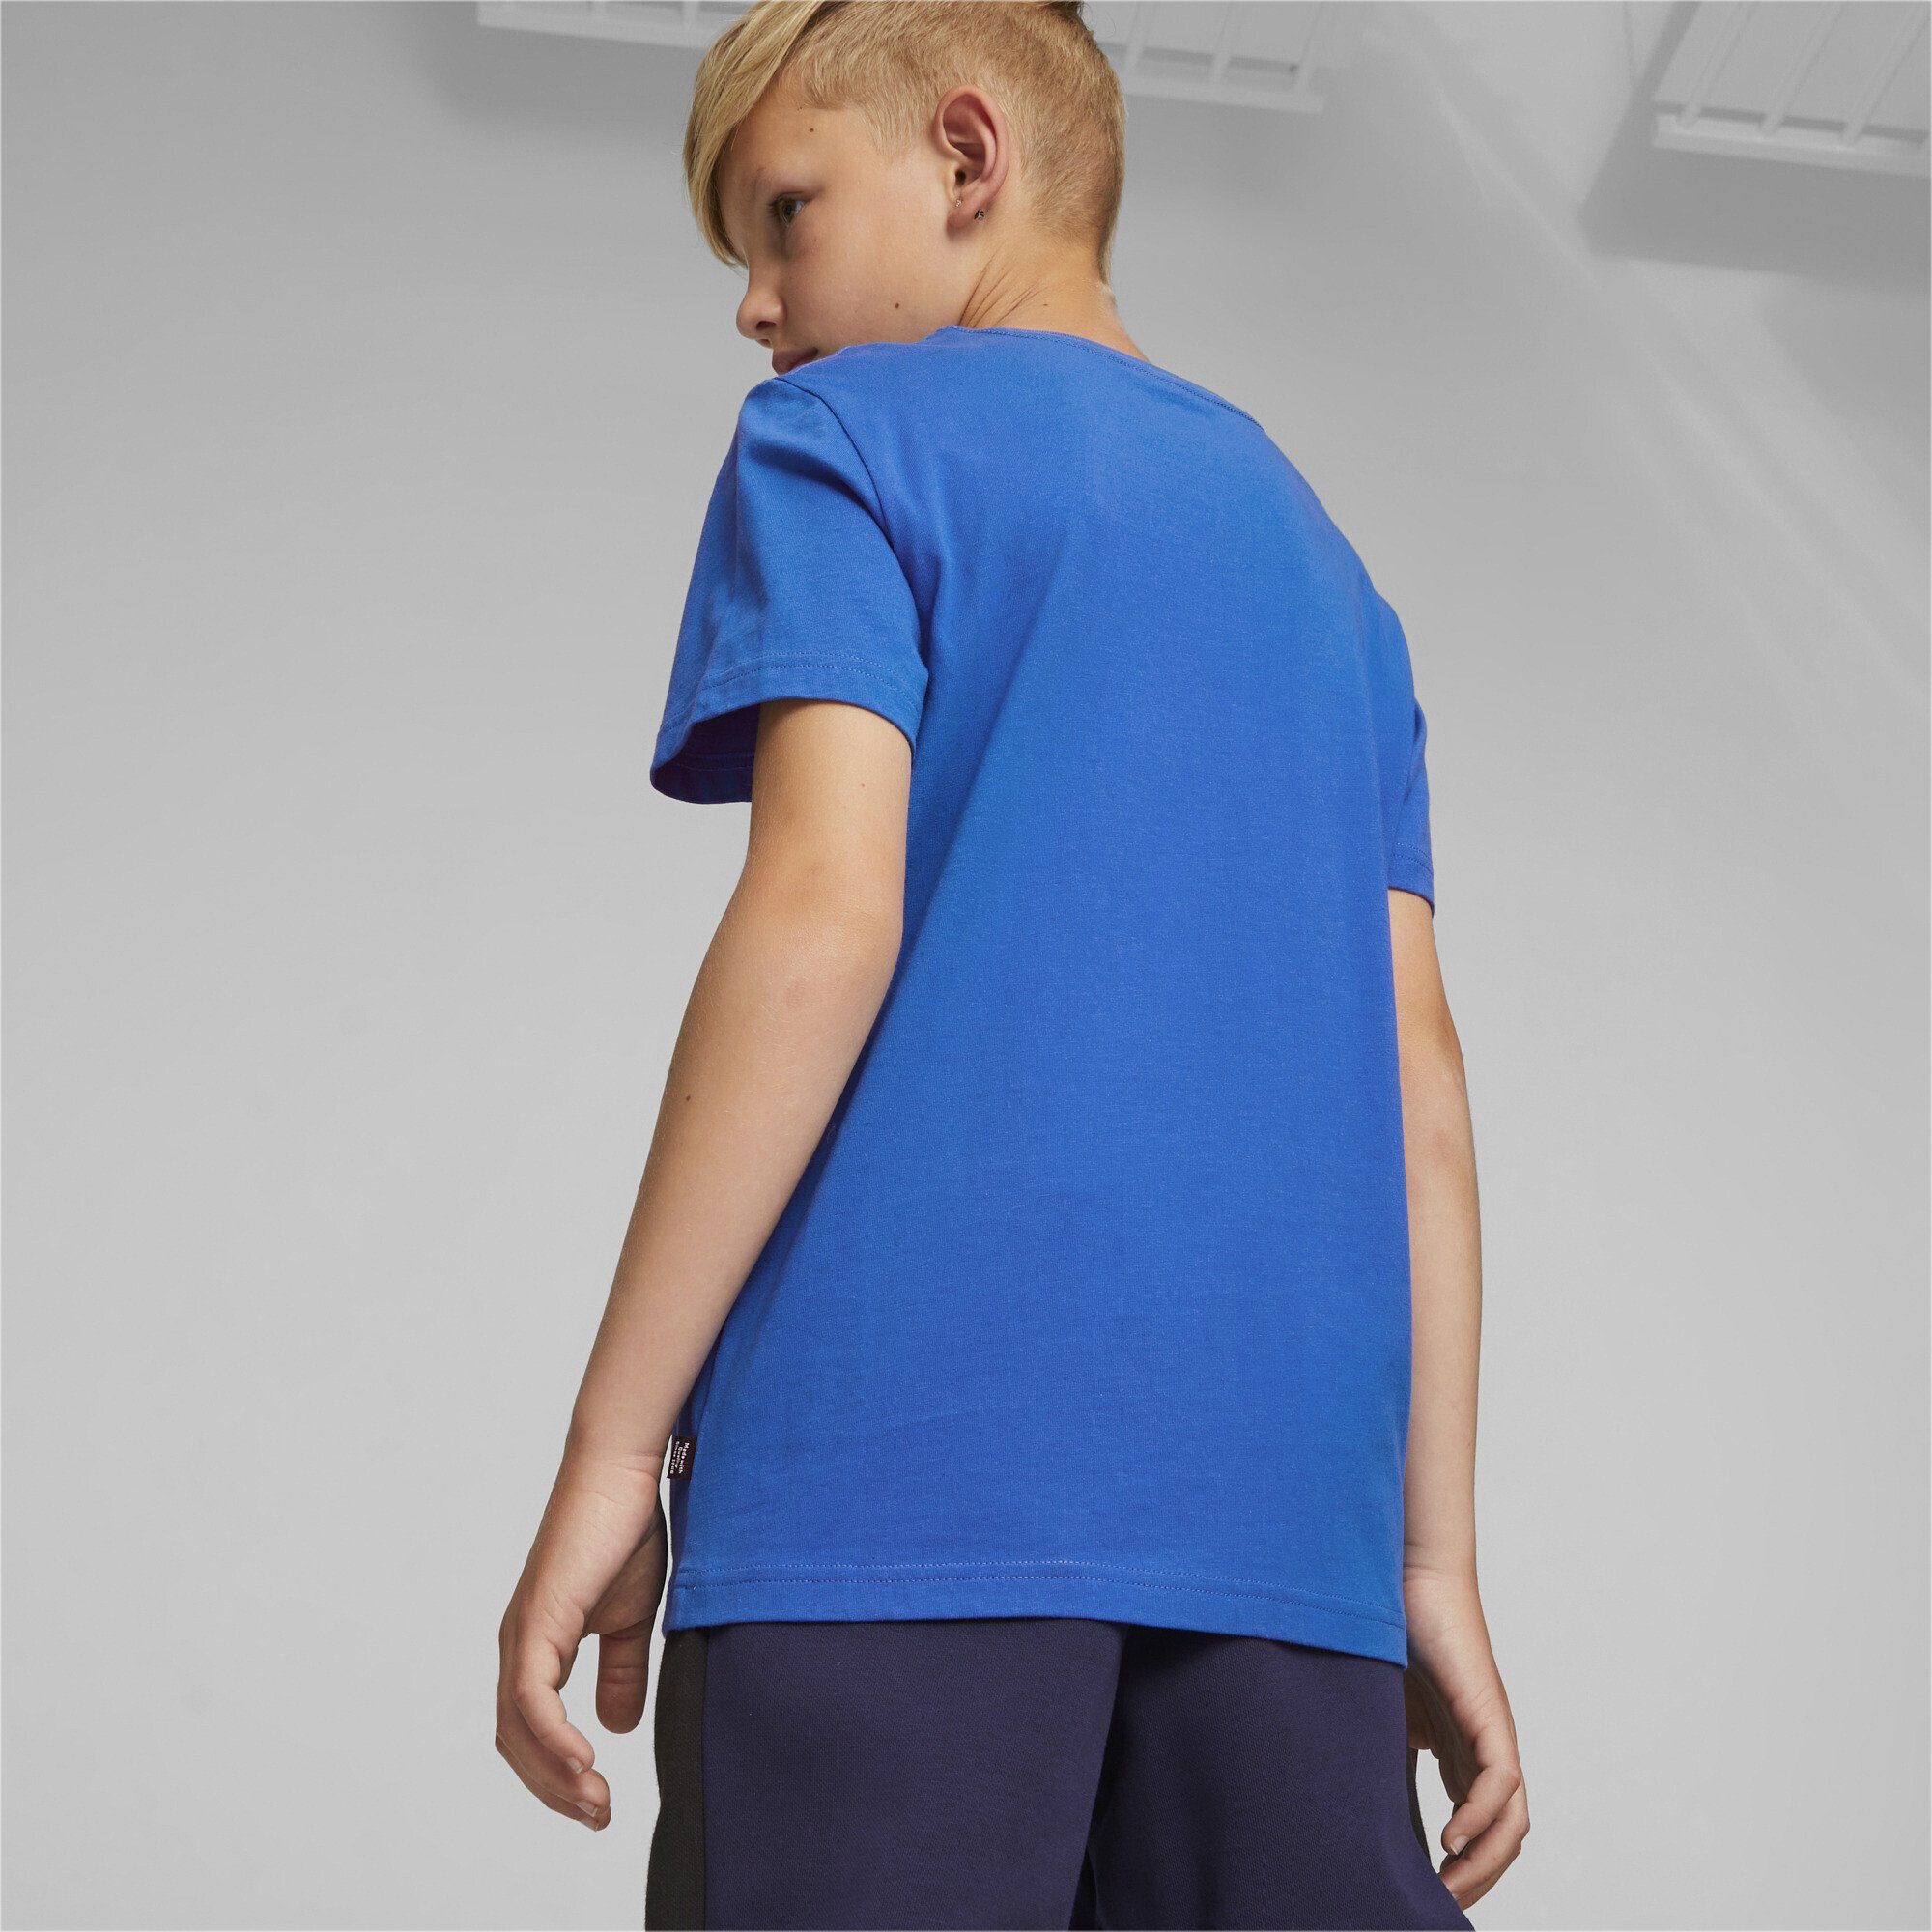 Logo Racing PUMA Jungen Two-Tone Essentials+ T-Shirt Trainingsshirt Blue